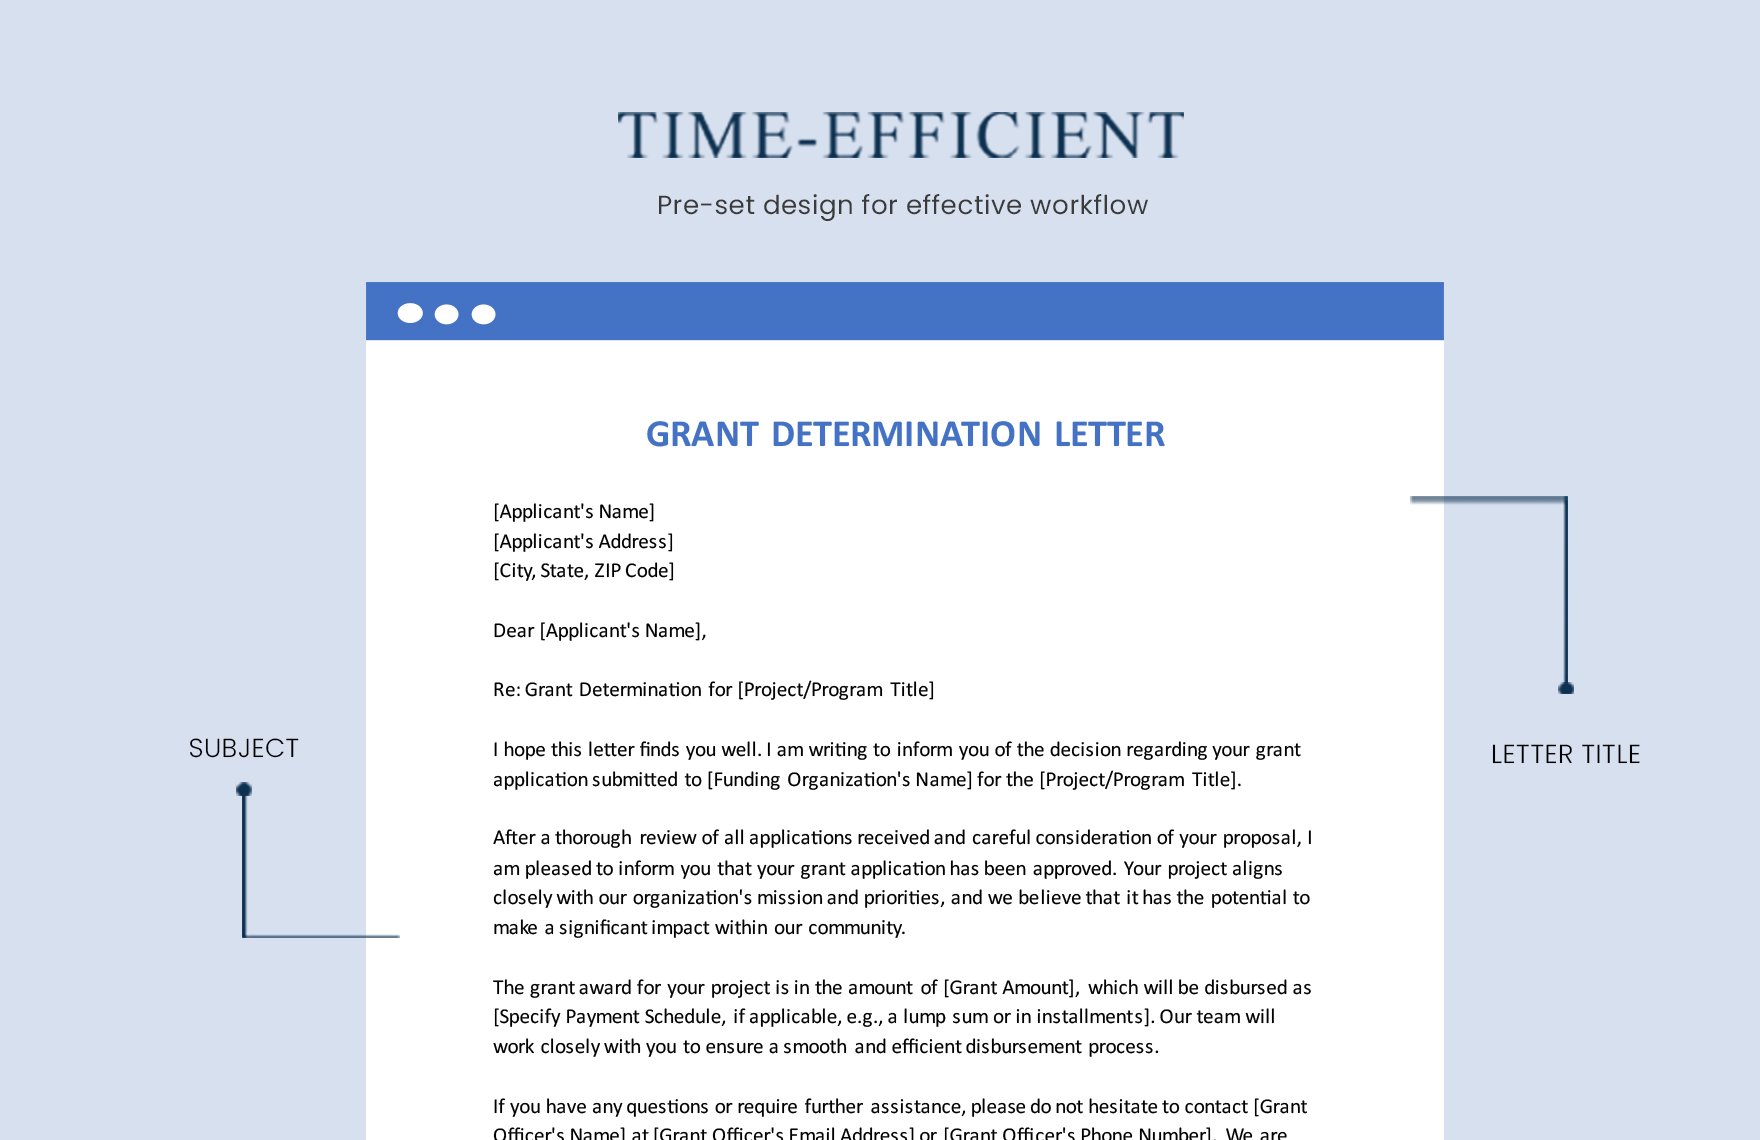 Grant Determination Letter